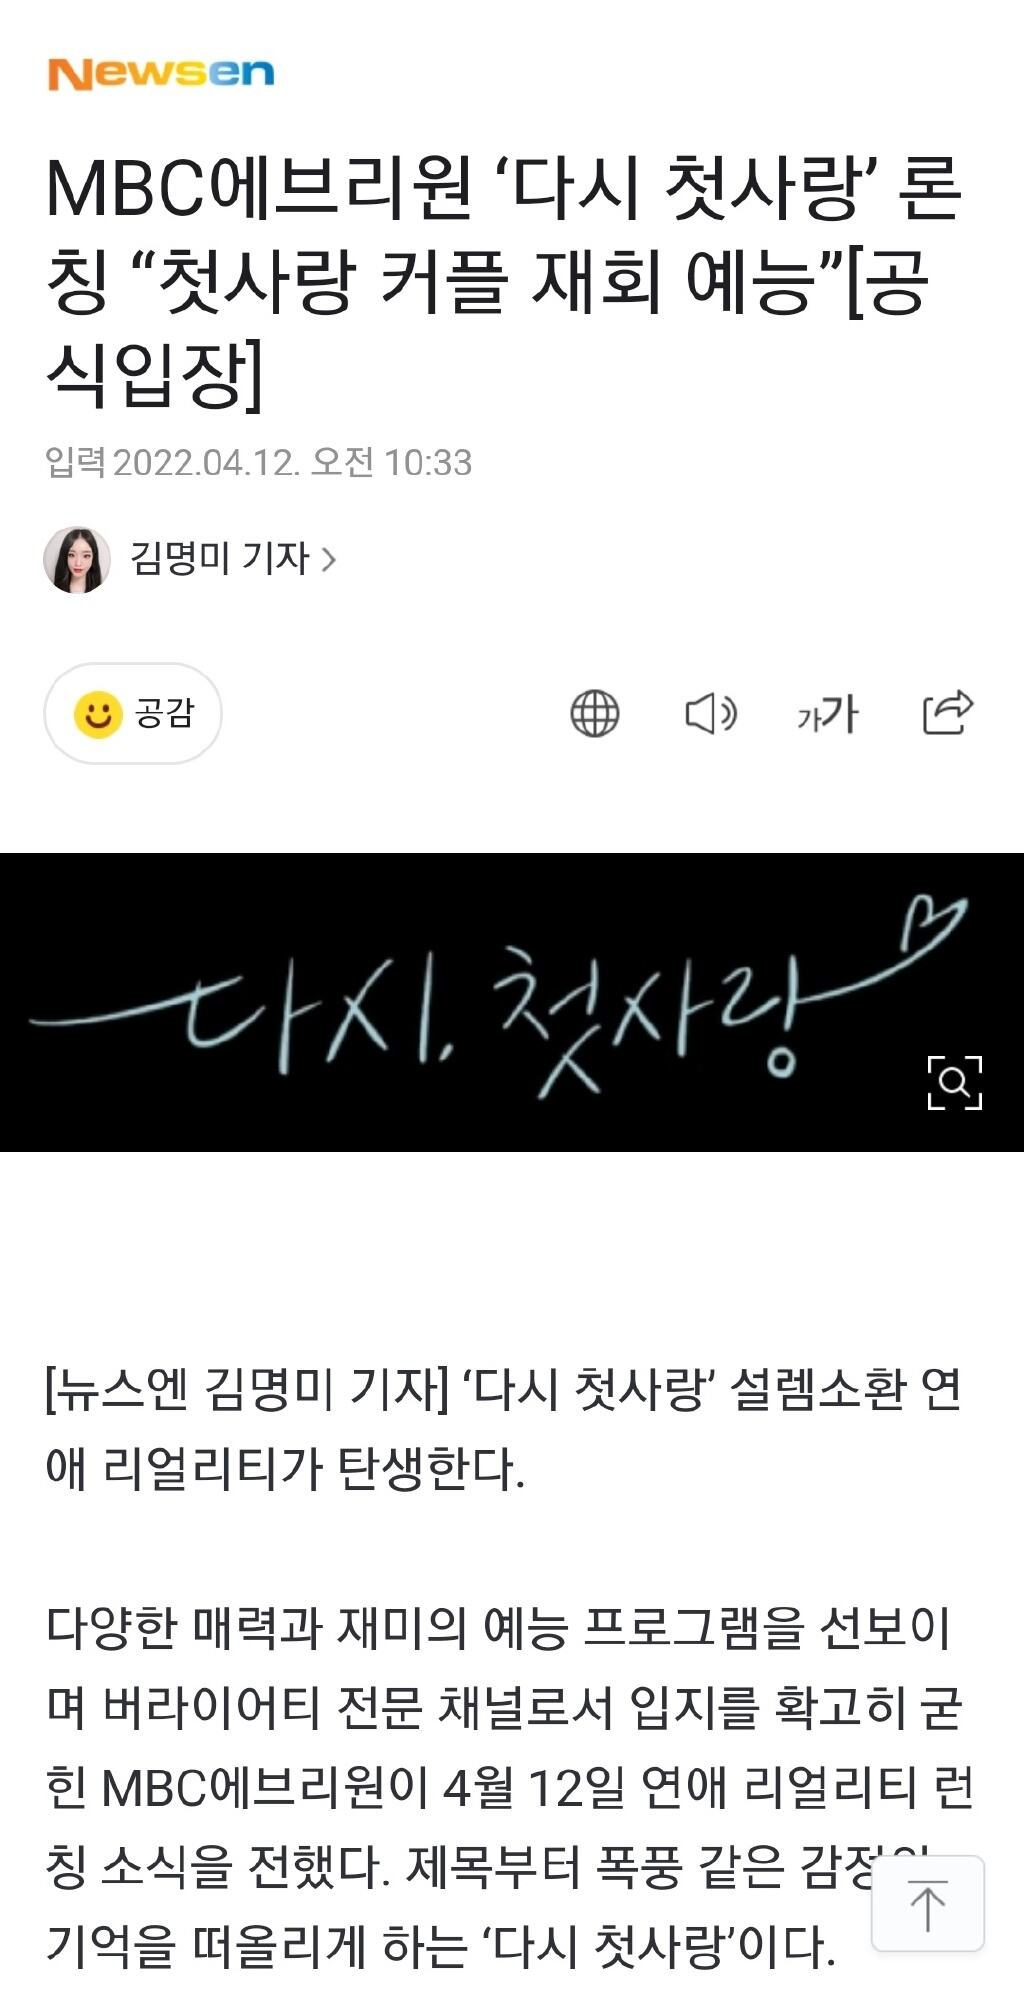 MBC将推出恋爱真人秀《再次初恋》 确定6月首播